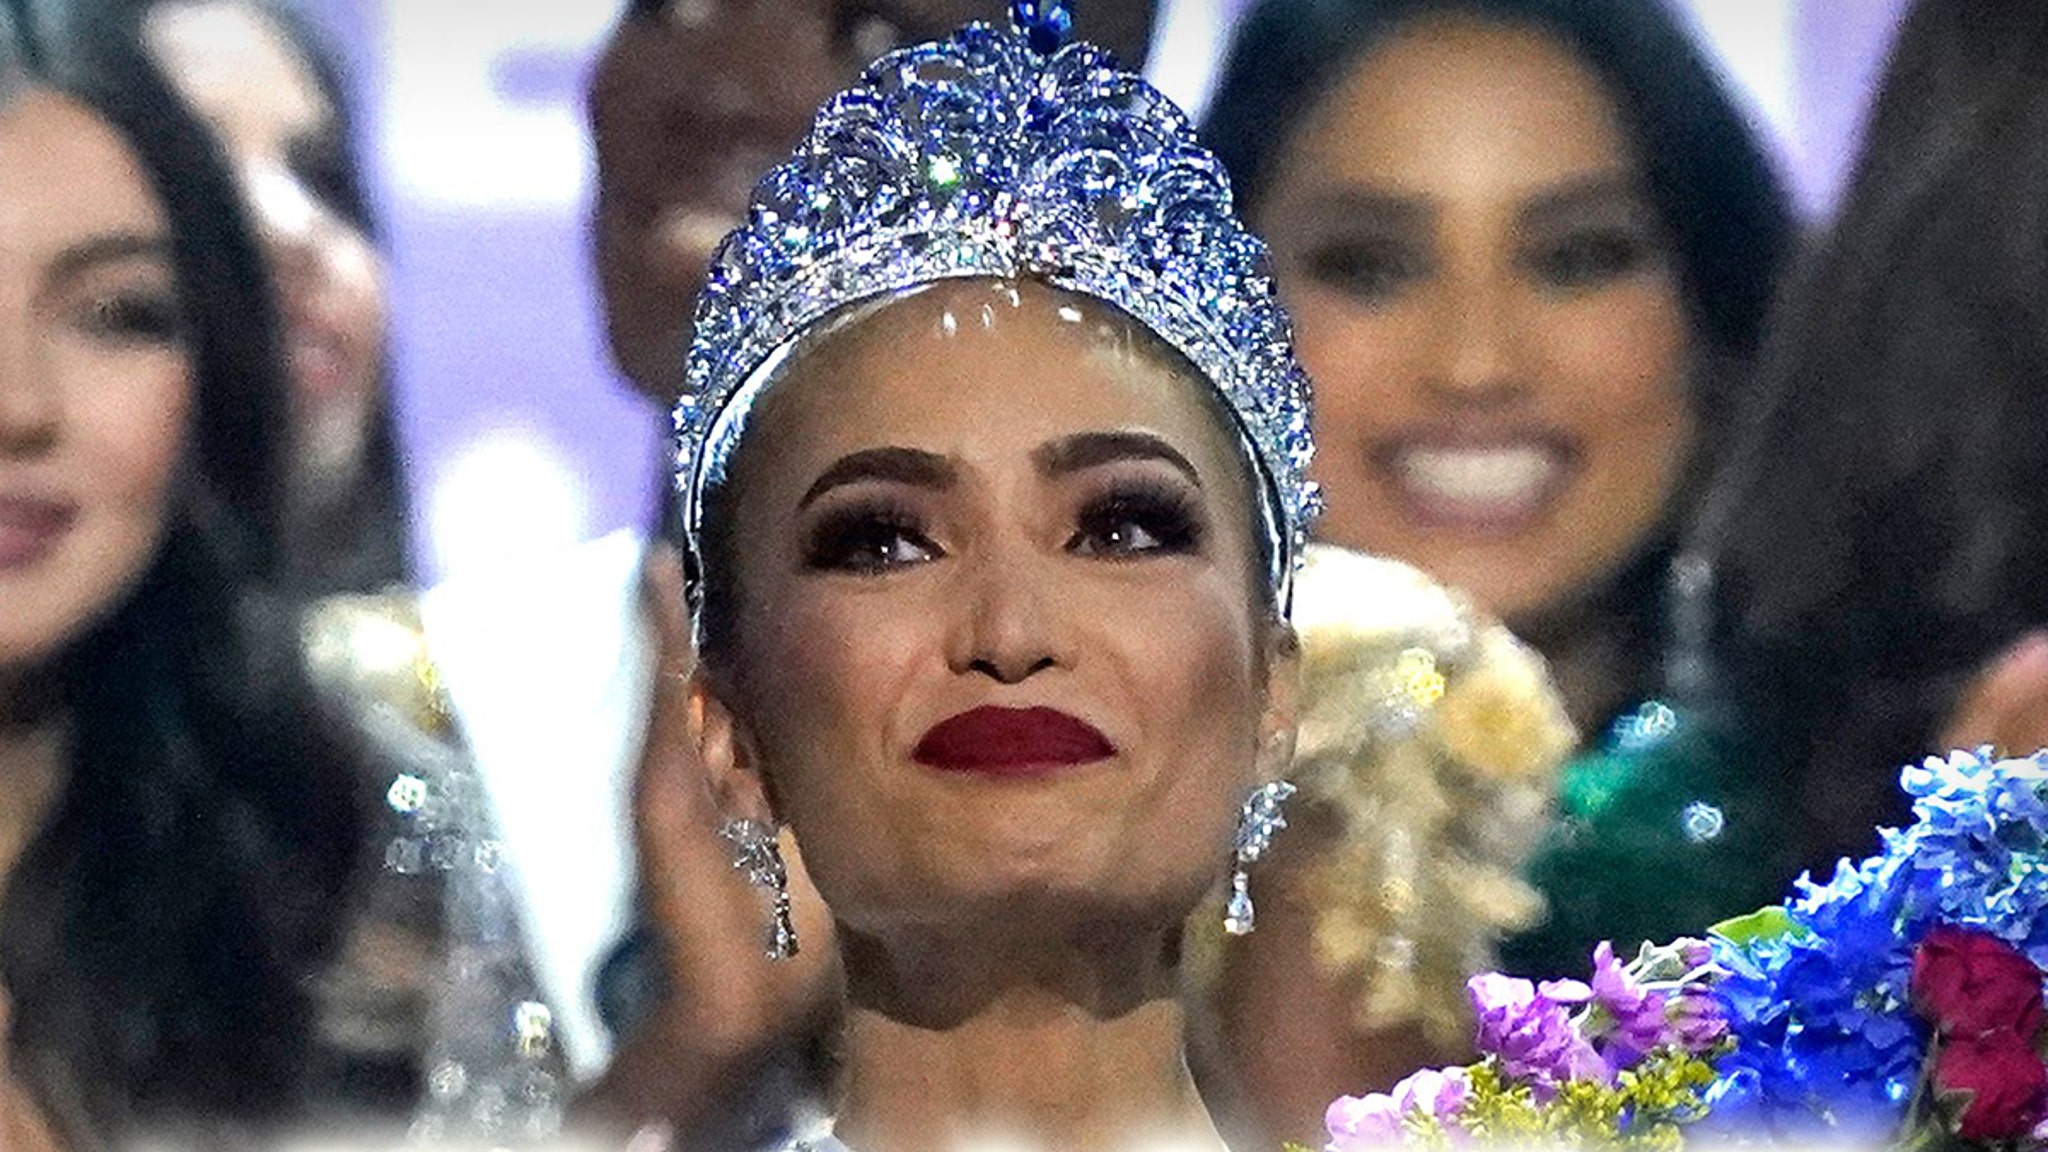 De CEO van Miss Universe zegt dat de resultaten zijn afgehandeld door een derde partij en ontkent dat er met de verkiezing is opgetuigd